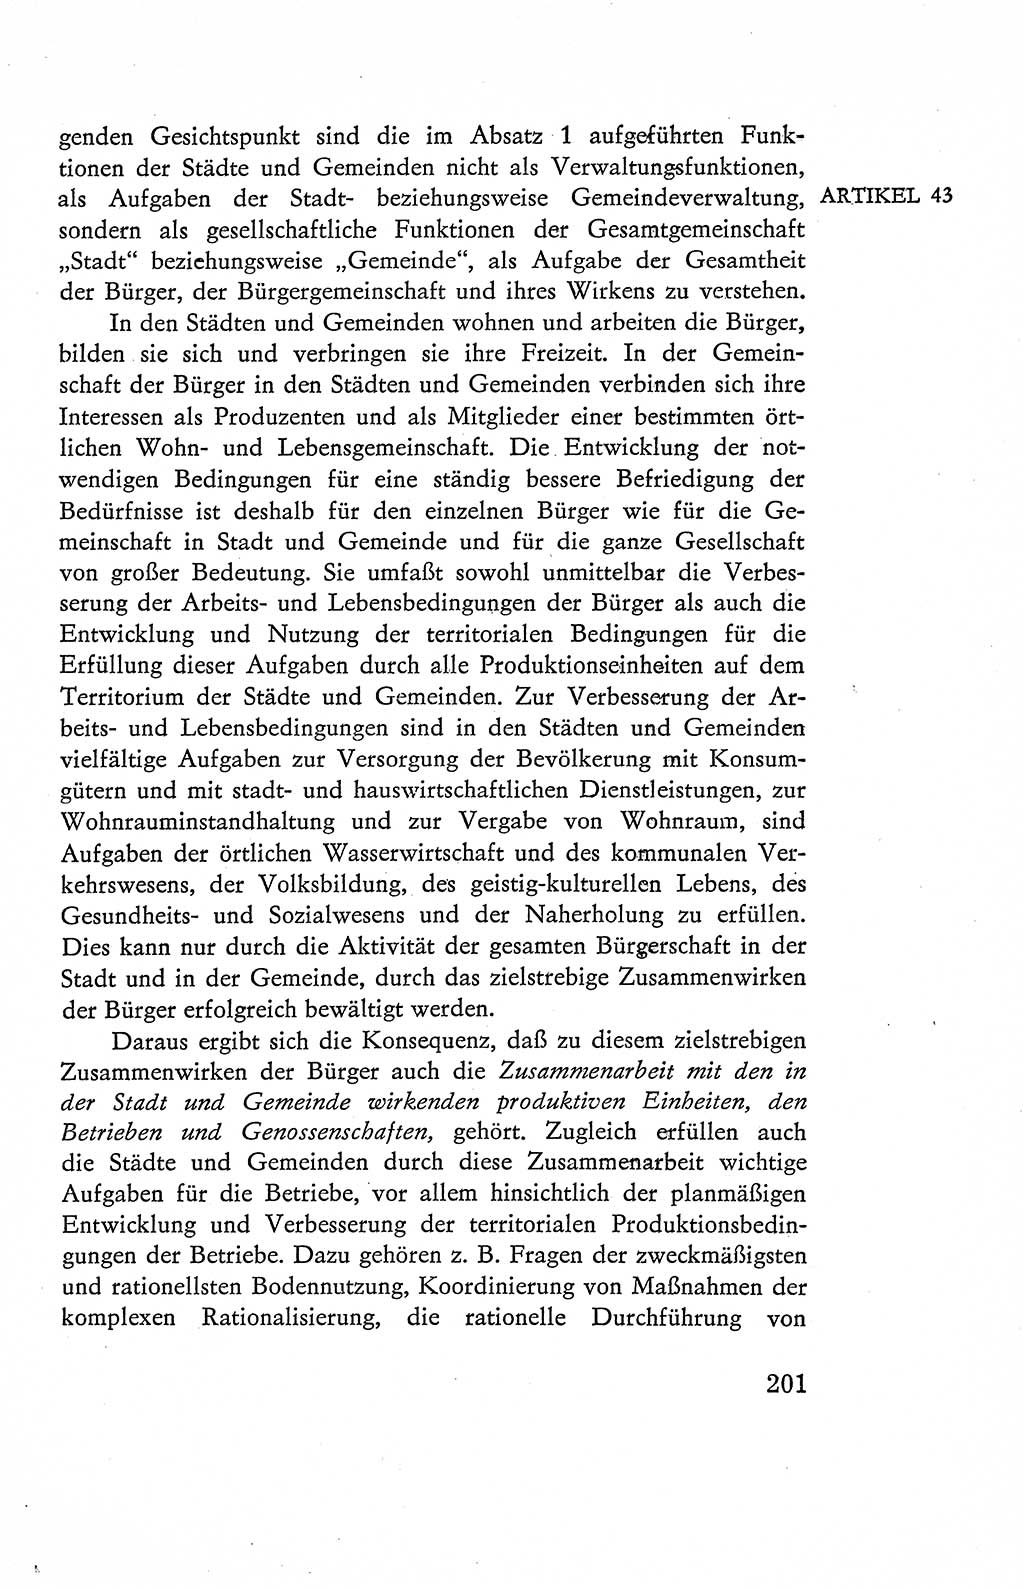 Verfassung der Deutschen Demokratischen Republik (DDR), Dokumente, Kommentar 1969, Band 2, Seite 201 (Verf. DDR Dok. Komm. 1969, Bd. 2, S. 201)